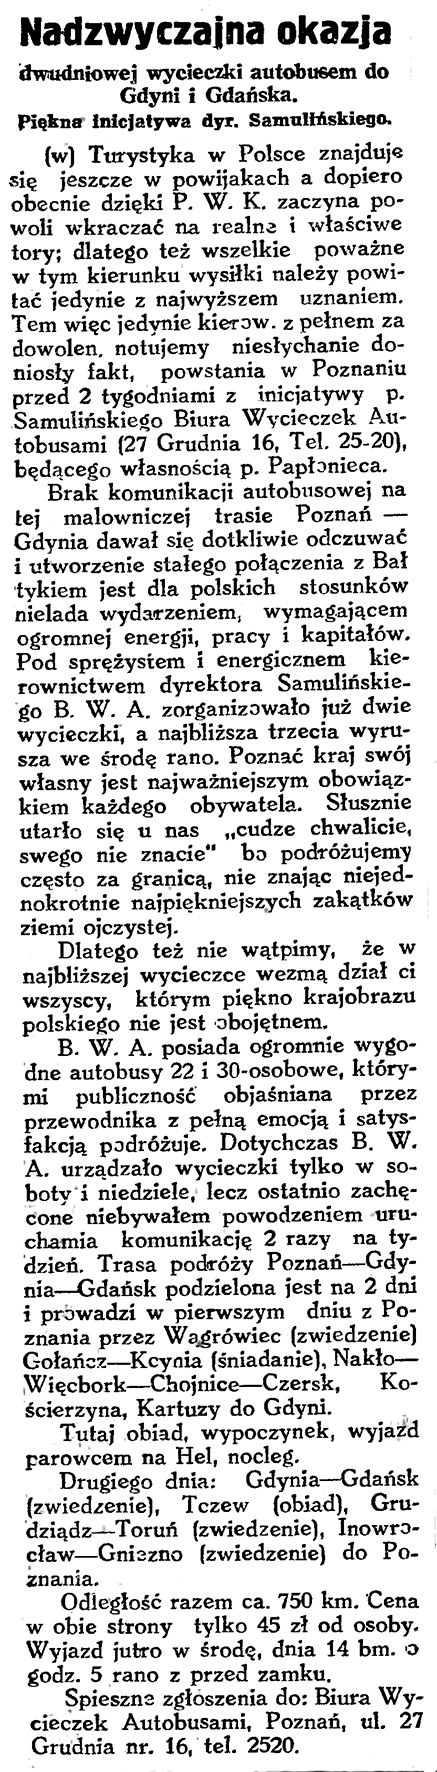 Nadzwyczajna okazja dwudniowej wycieczki autobusem do Gdyni i Gdańska. Piękna inicjatywa dyr. Samulińskiego // Gazeta Gdańska. - 1929, nr 159, s. 6